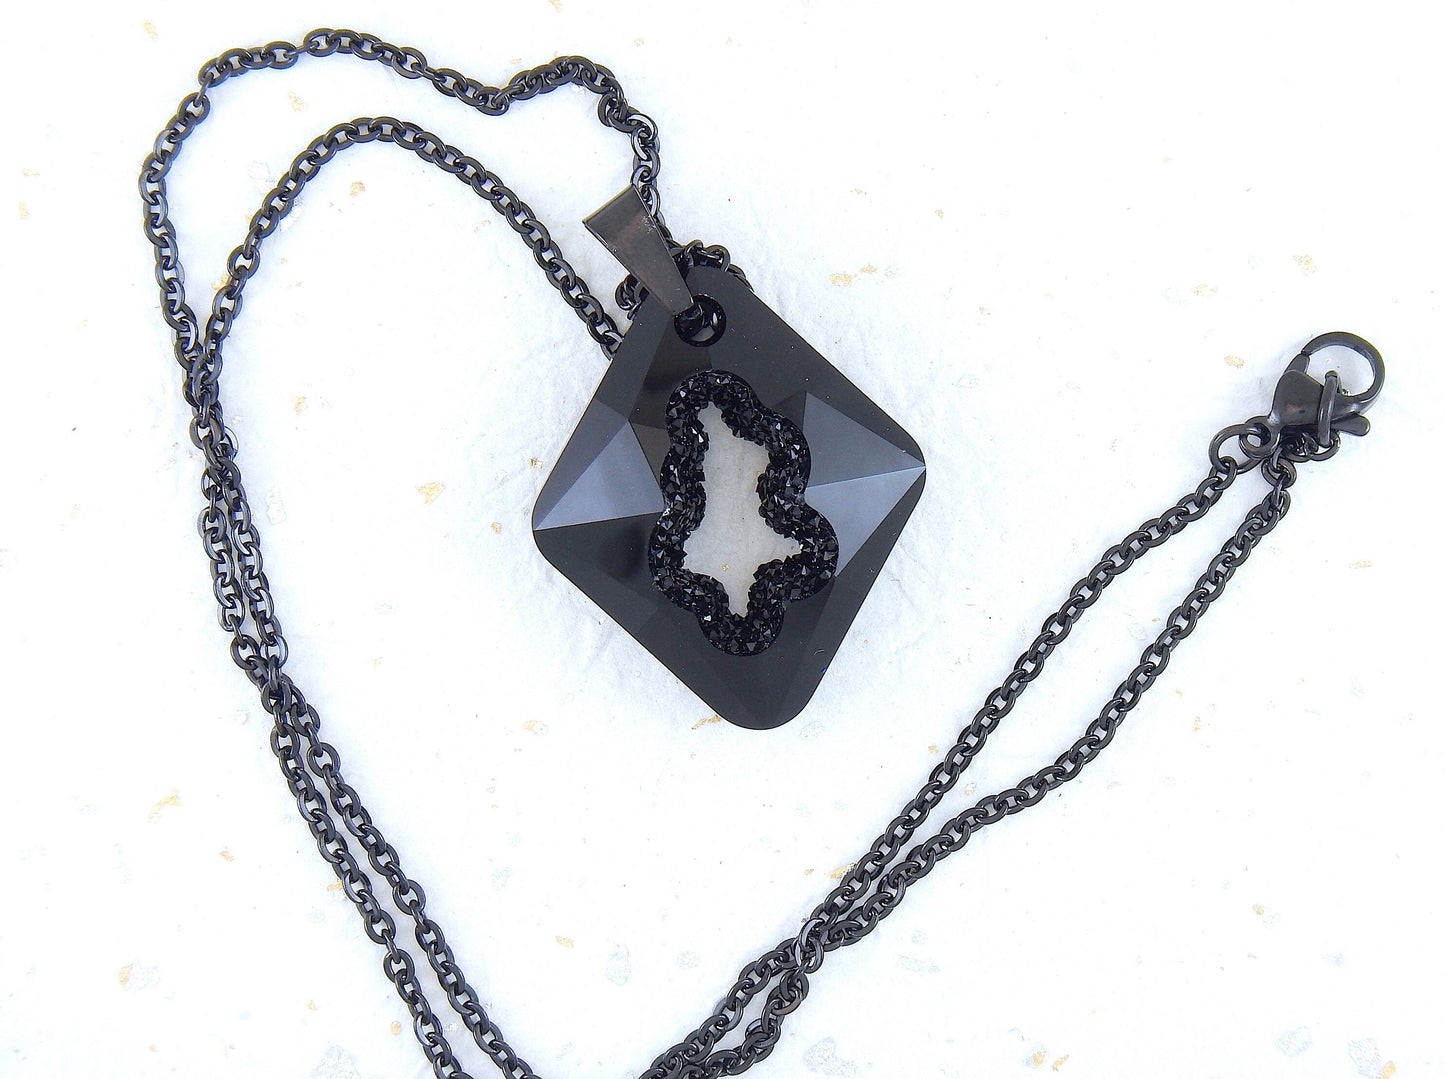 Collier 20 po à pendentif losange Rhombus 35mm de cristal Swarovski noir, centre cristallisé, chaîne acier inoxydable noir 